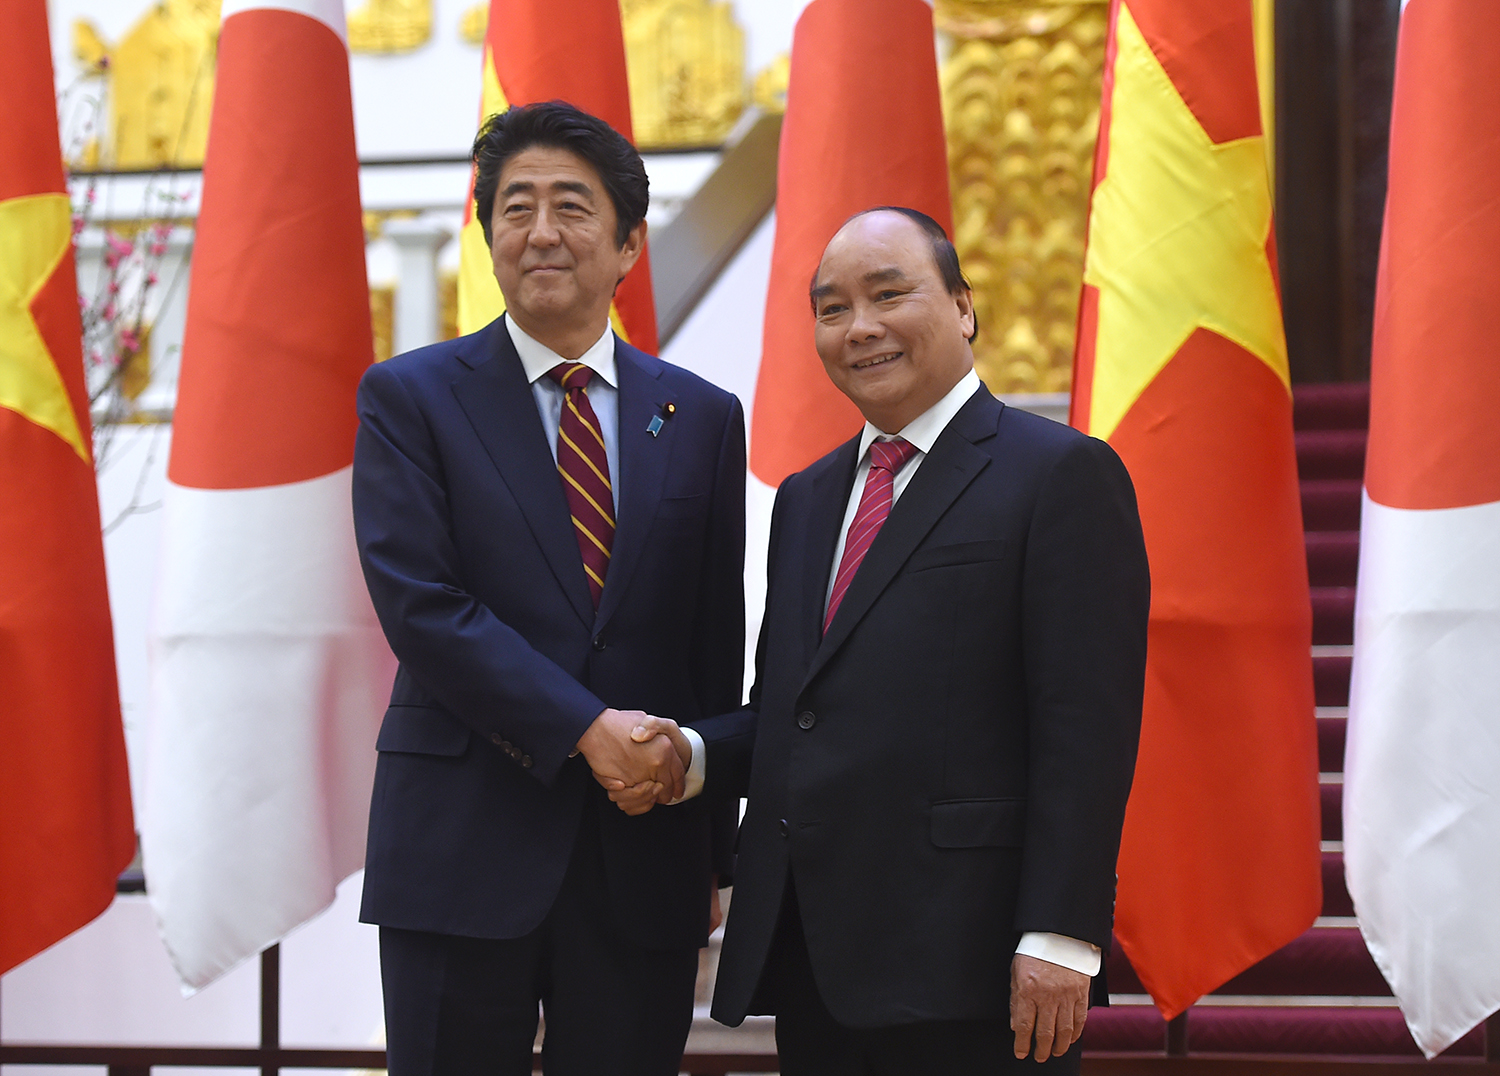 Hợp tác Việt Nam - Nhật Bản góp phần đưa đất nước ta tiến lên phía trước, giúp Việt Nam trở thành đối tác quan trọng trong khu vực và trên thế giới. Hai bên đã triển khai nhiều chương trình hợp tác kinh tế, đổi mới công nghệ, giáo dục và y tế mang lại lợi ích lớn cho cả hai dân tộc.